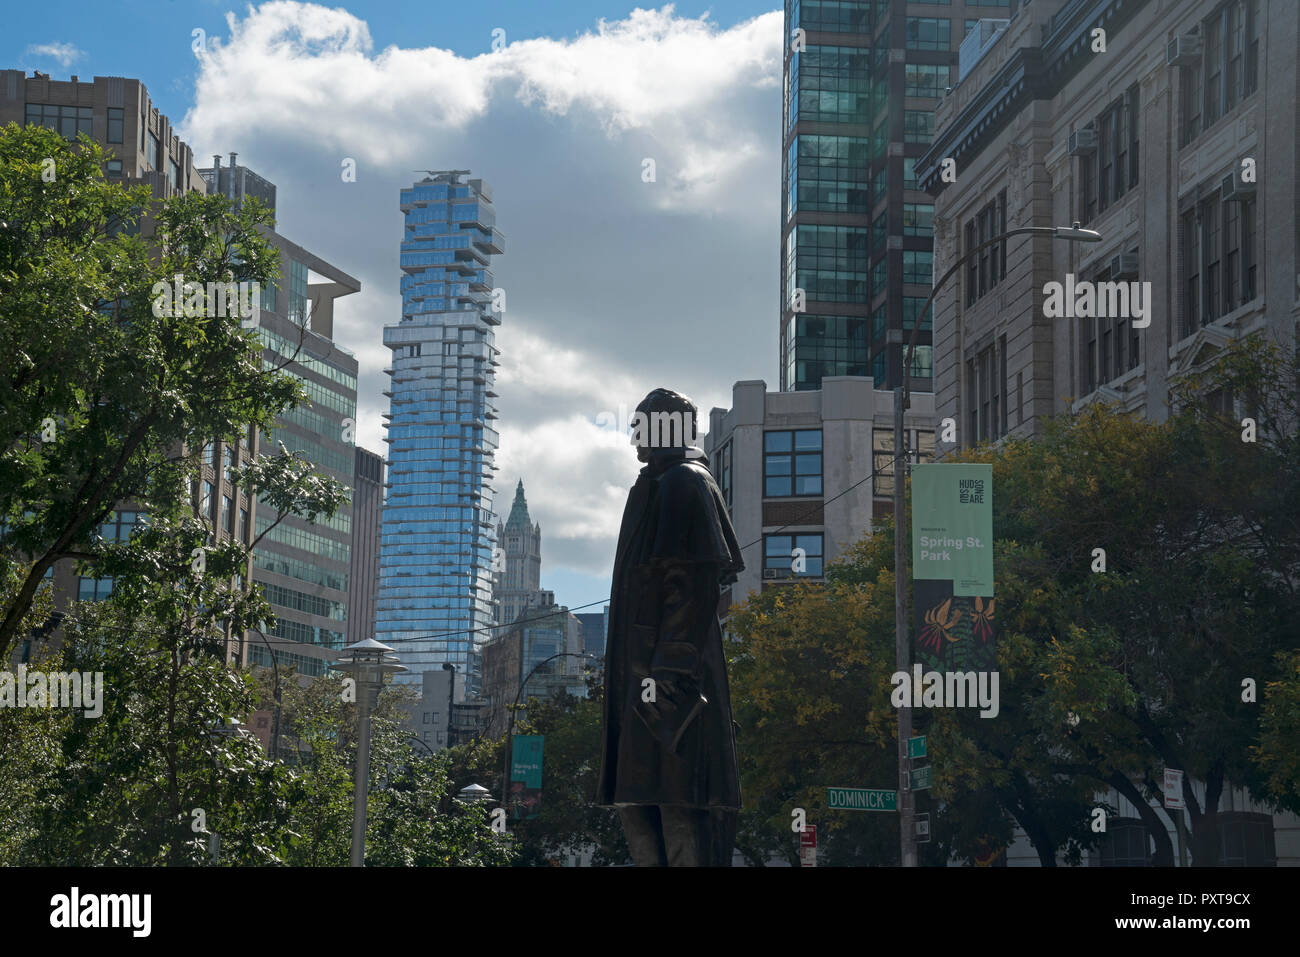 Eine Statue der Uruguayischen held José Artigas in die Spring Street Park in Manhattan Soho Nachbarschaft steht, mit dem Woolworth Building in der Ferne. Stockfoto